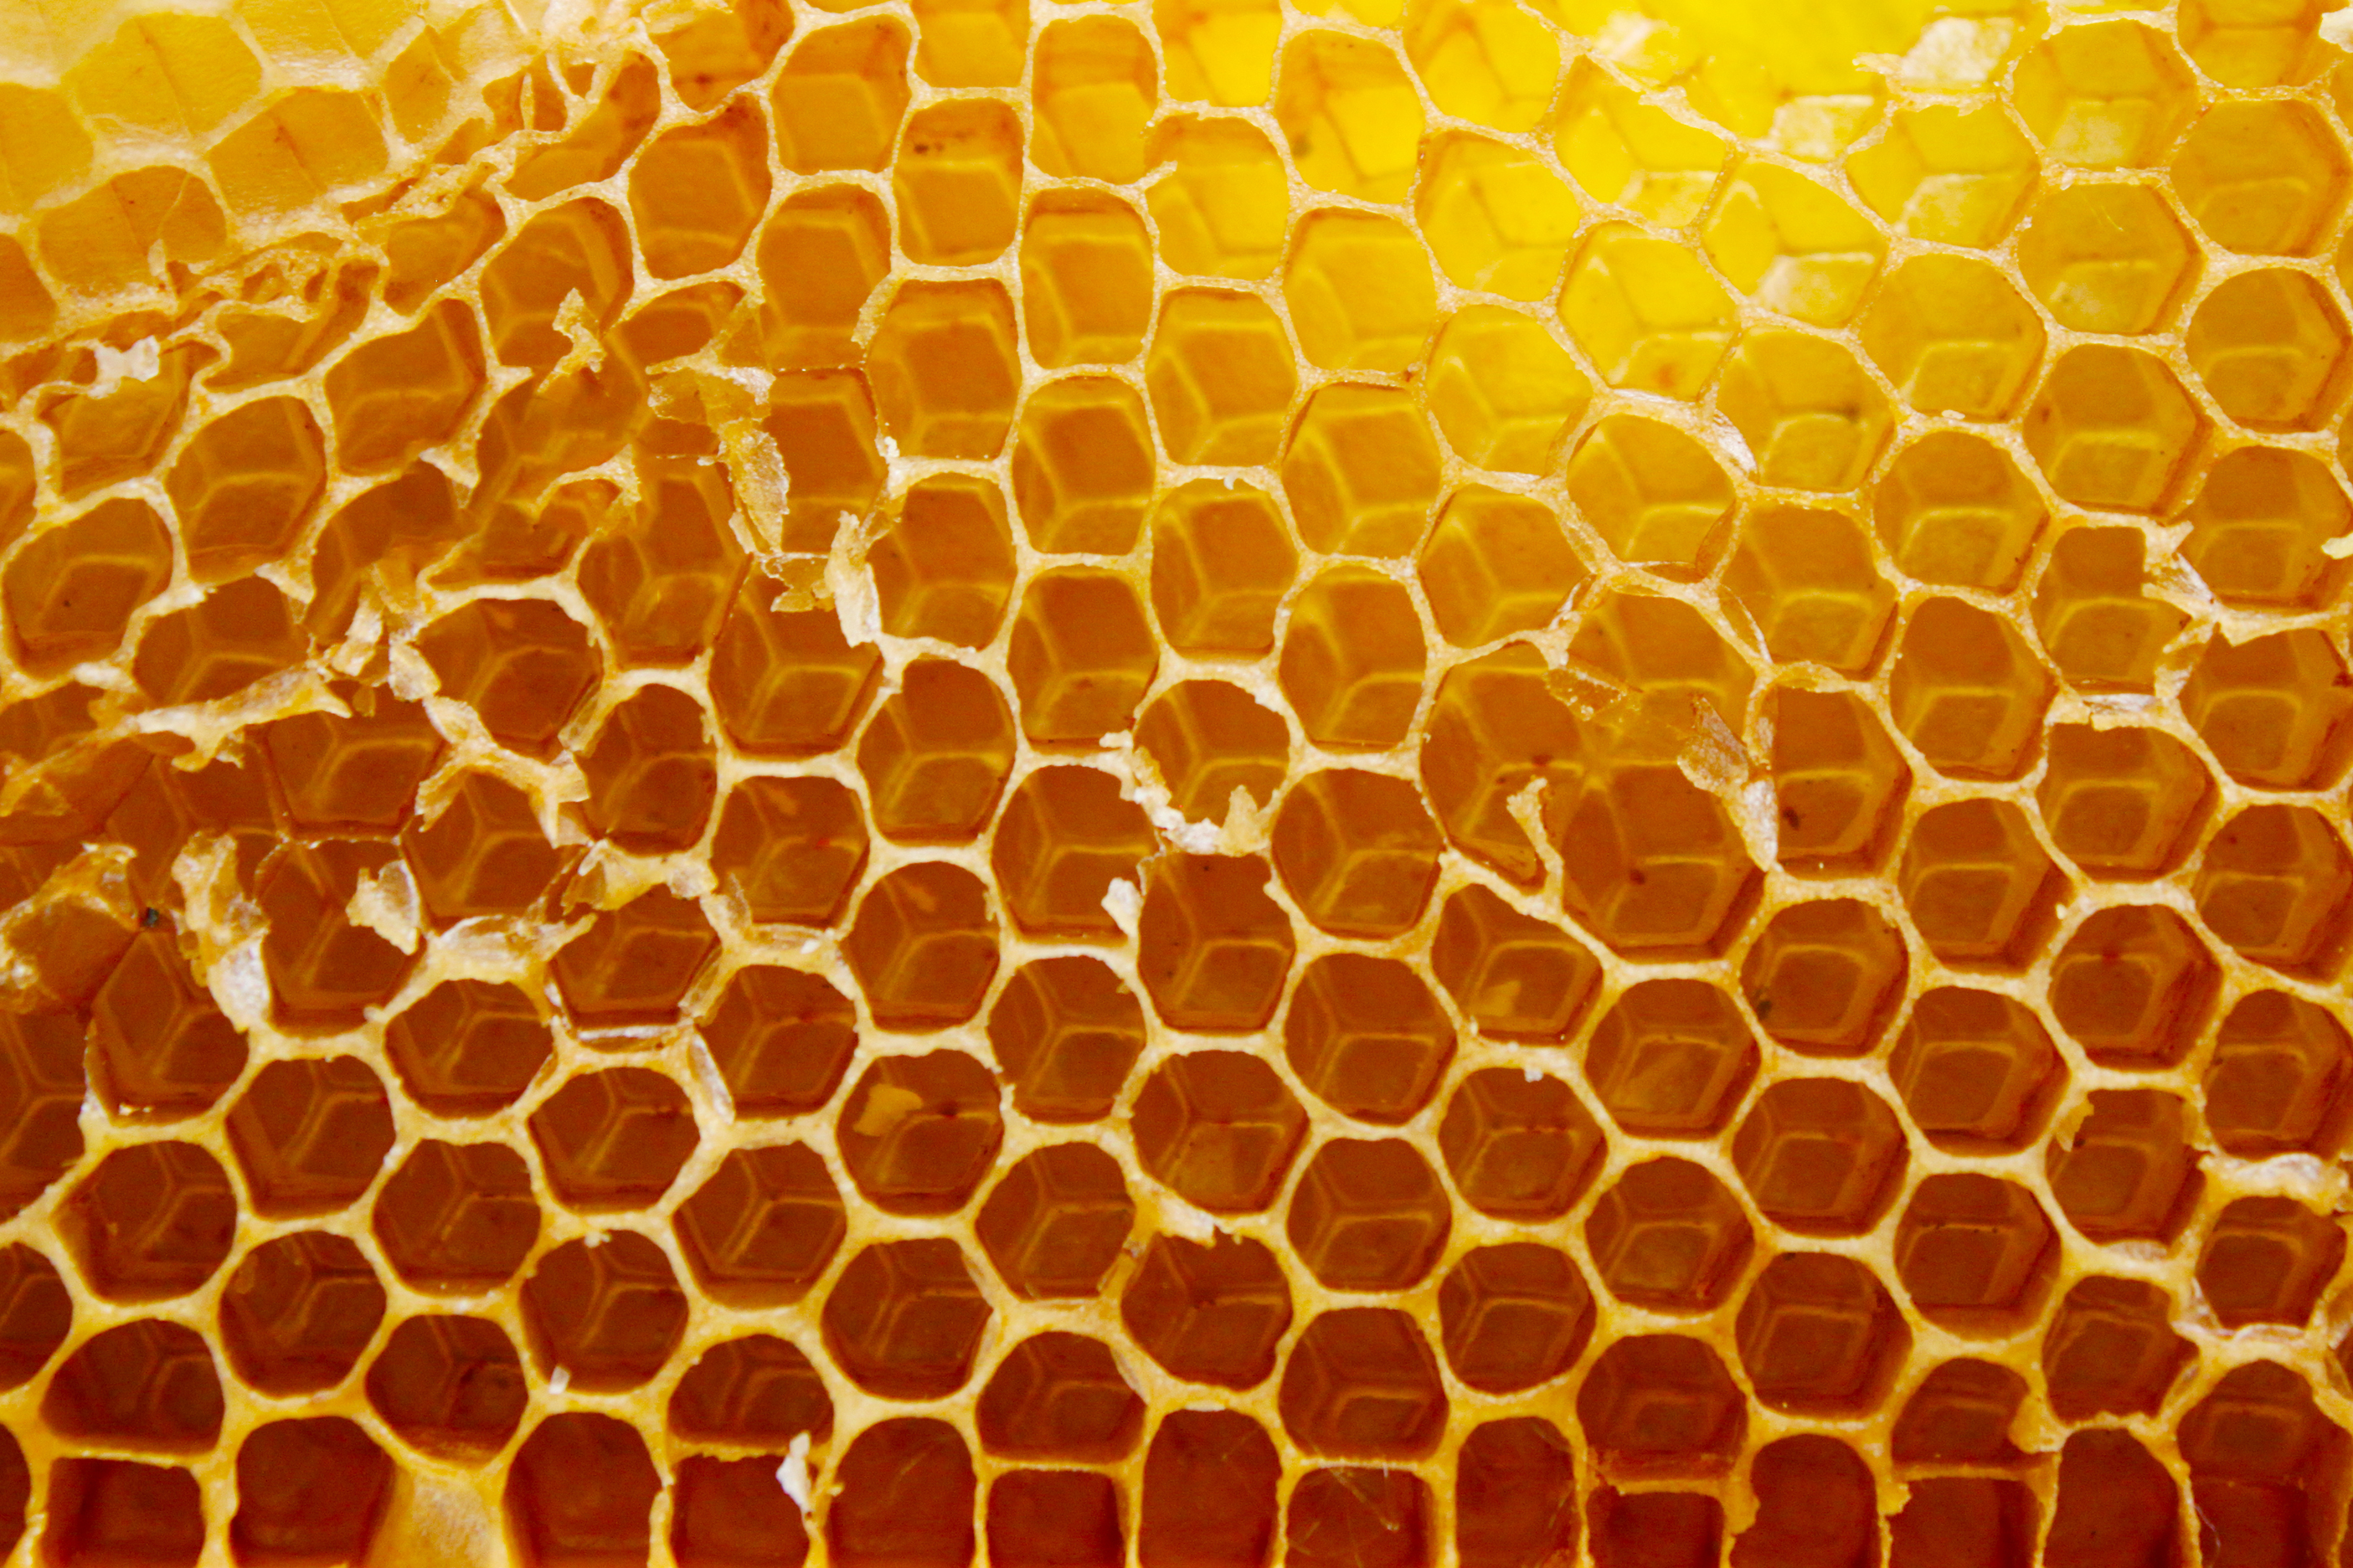 Beehive texture photo